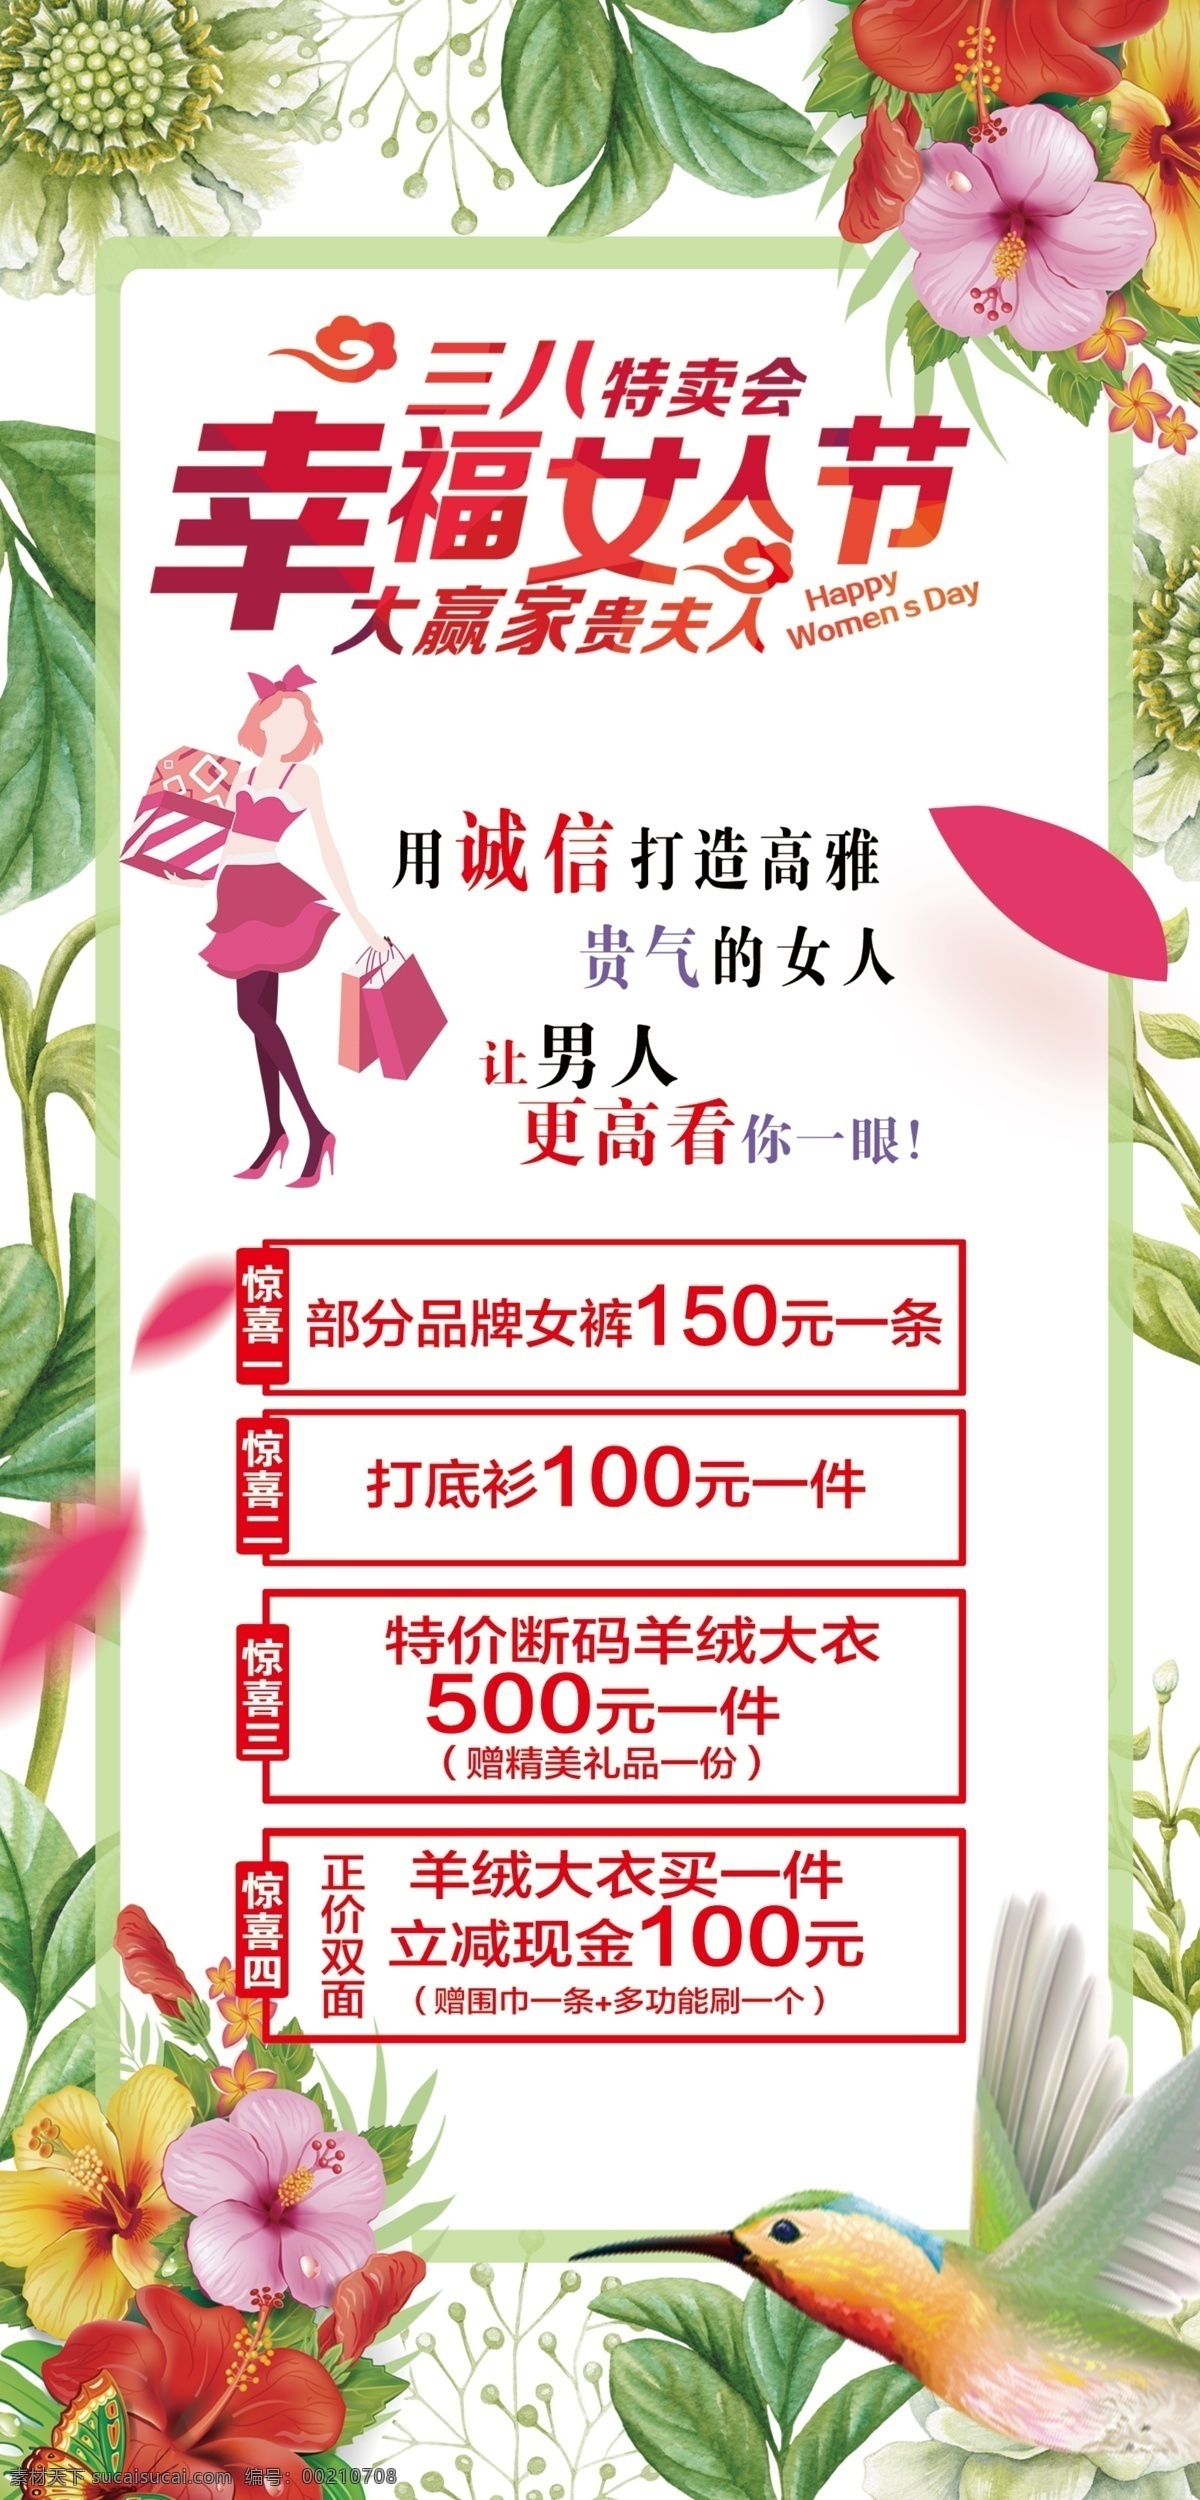 幸福 女人 节 三 八 春季 女人节 特卖会 活动海报